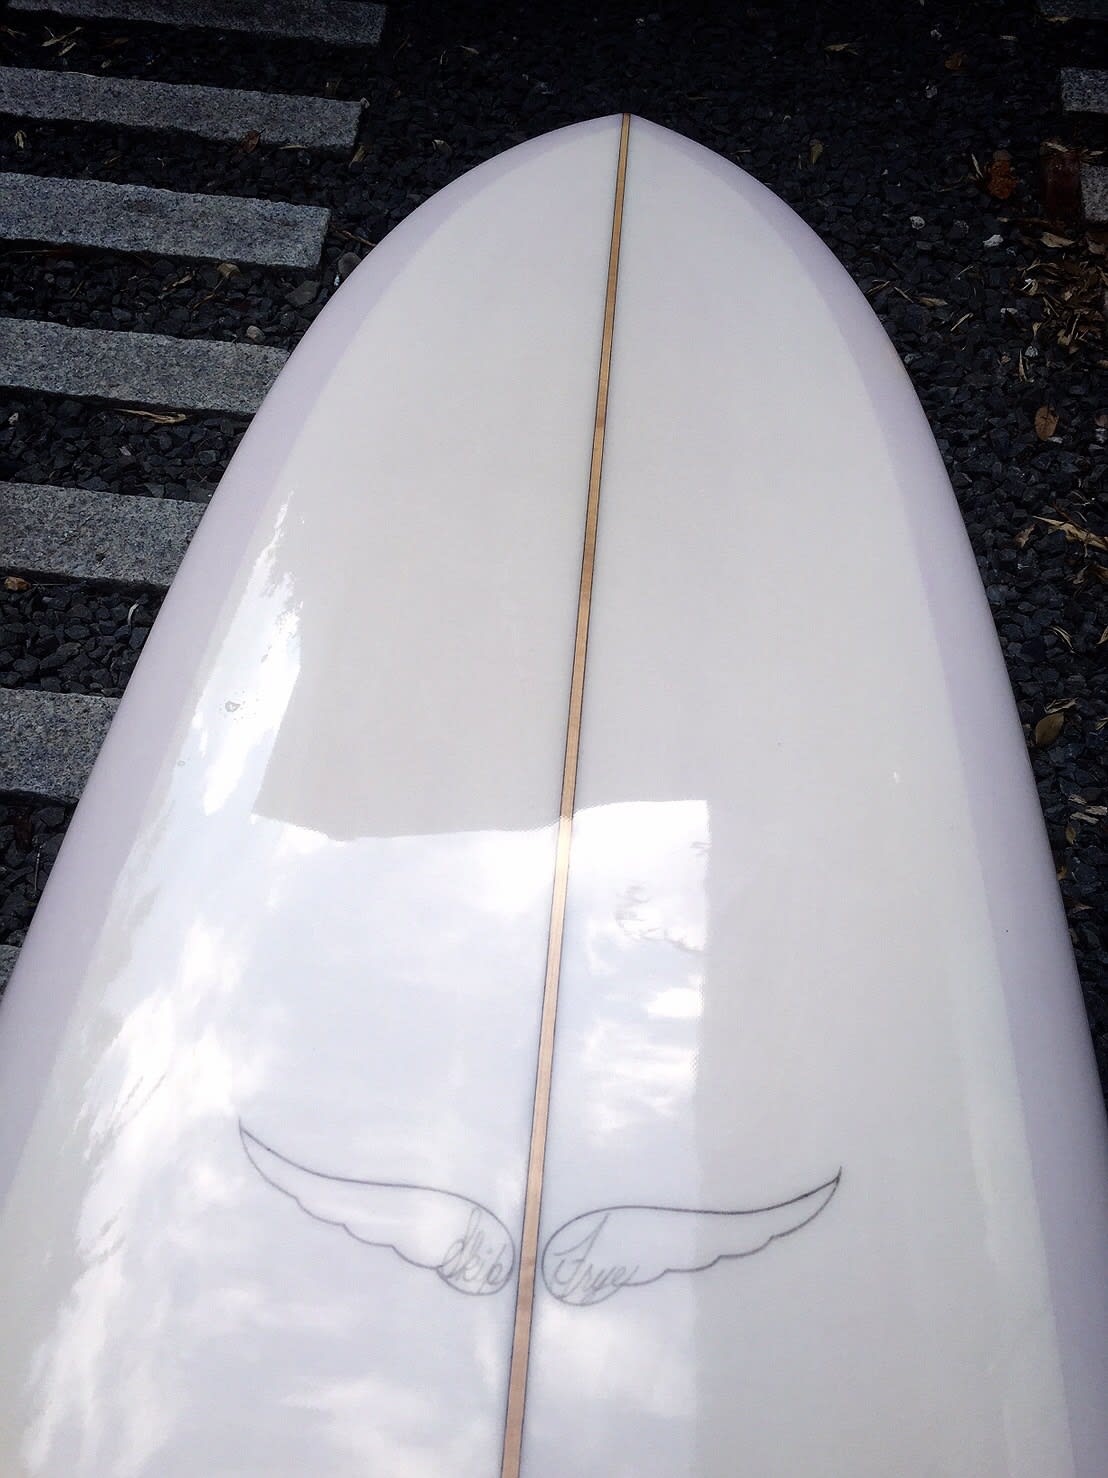 中古ロングボード USED SURFBOARD 2017 for sale - レキの波乗り工房Ⅱ